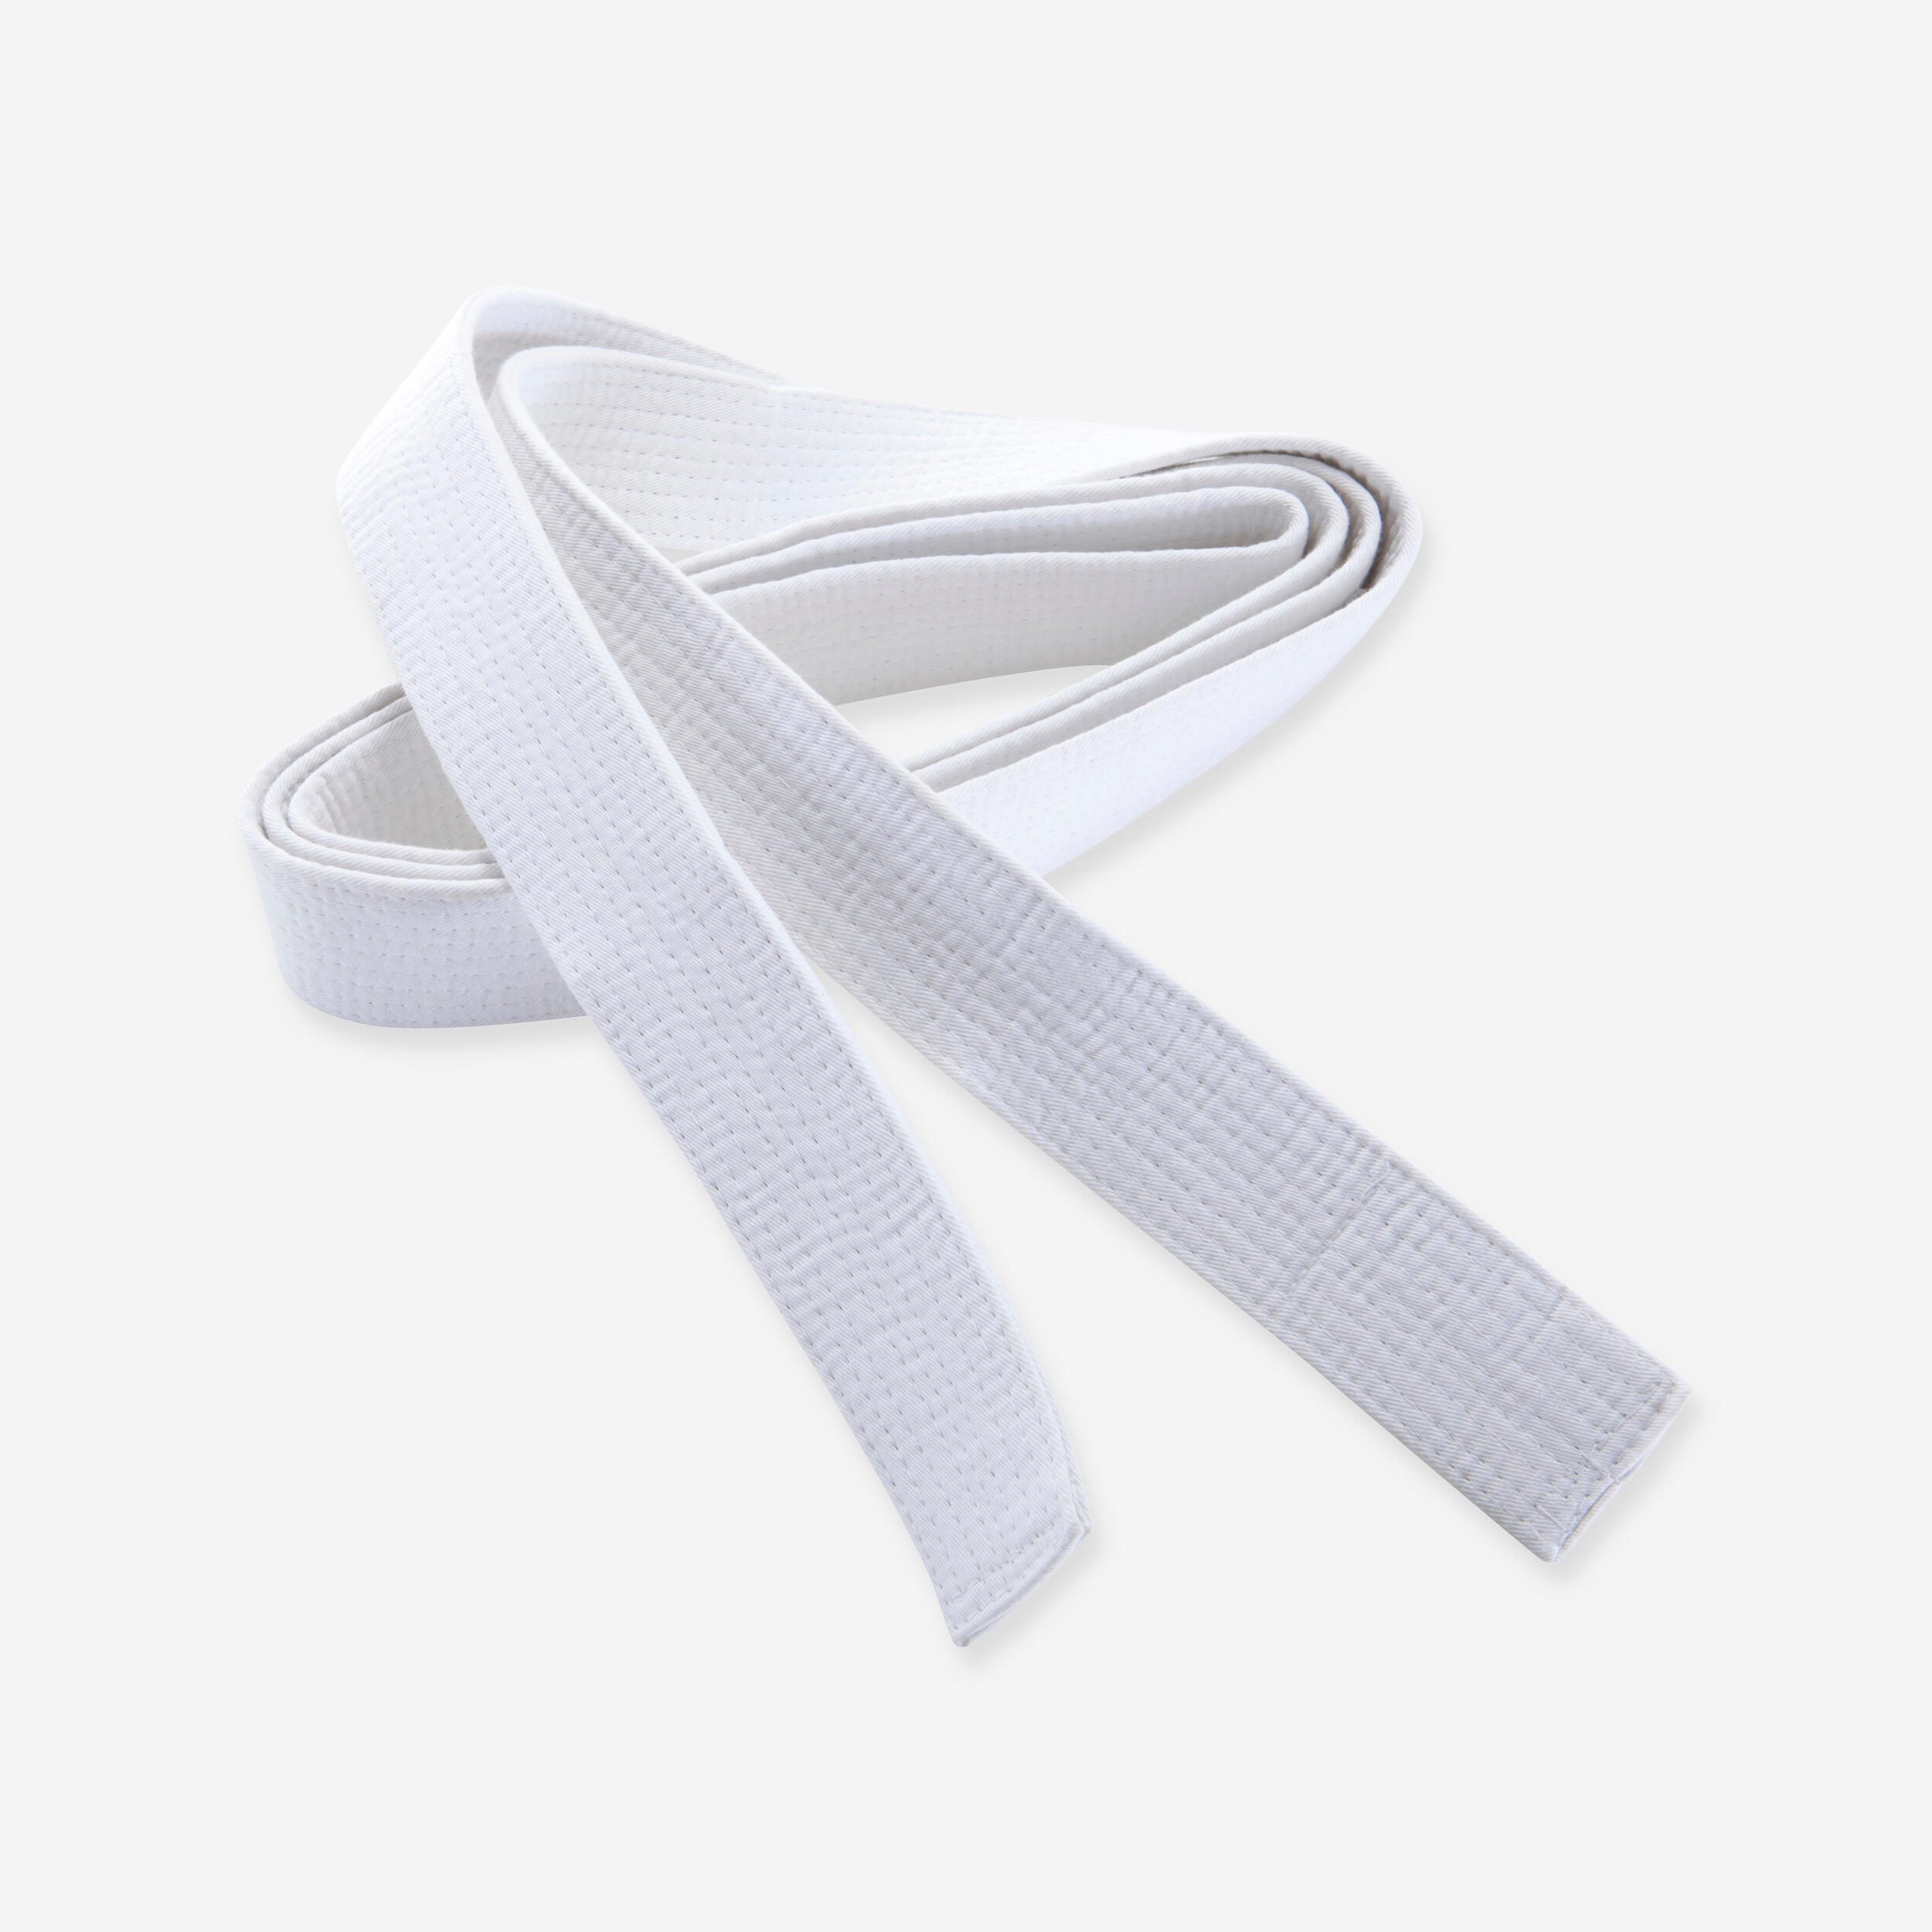 2.5m Piqué Belt - White 1/2